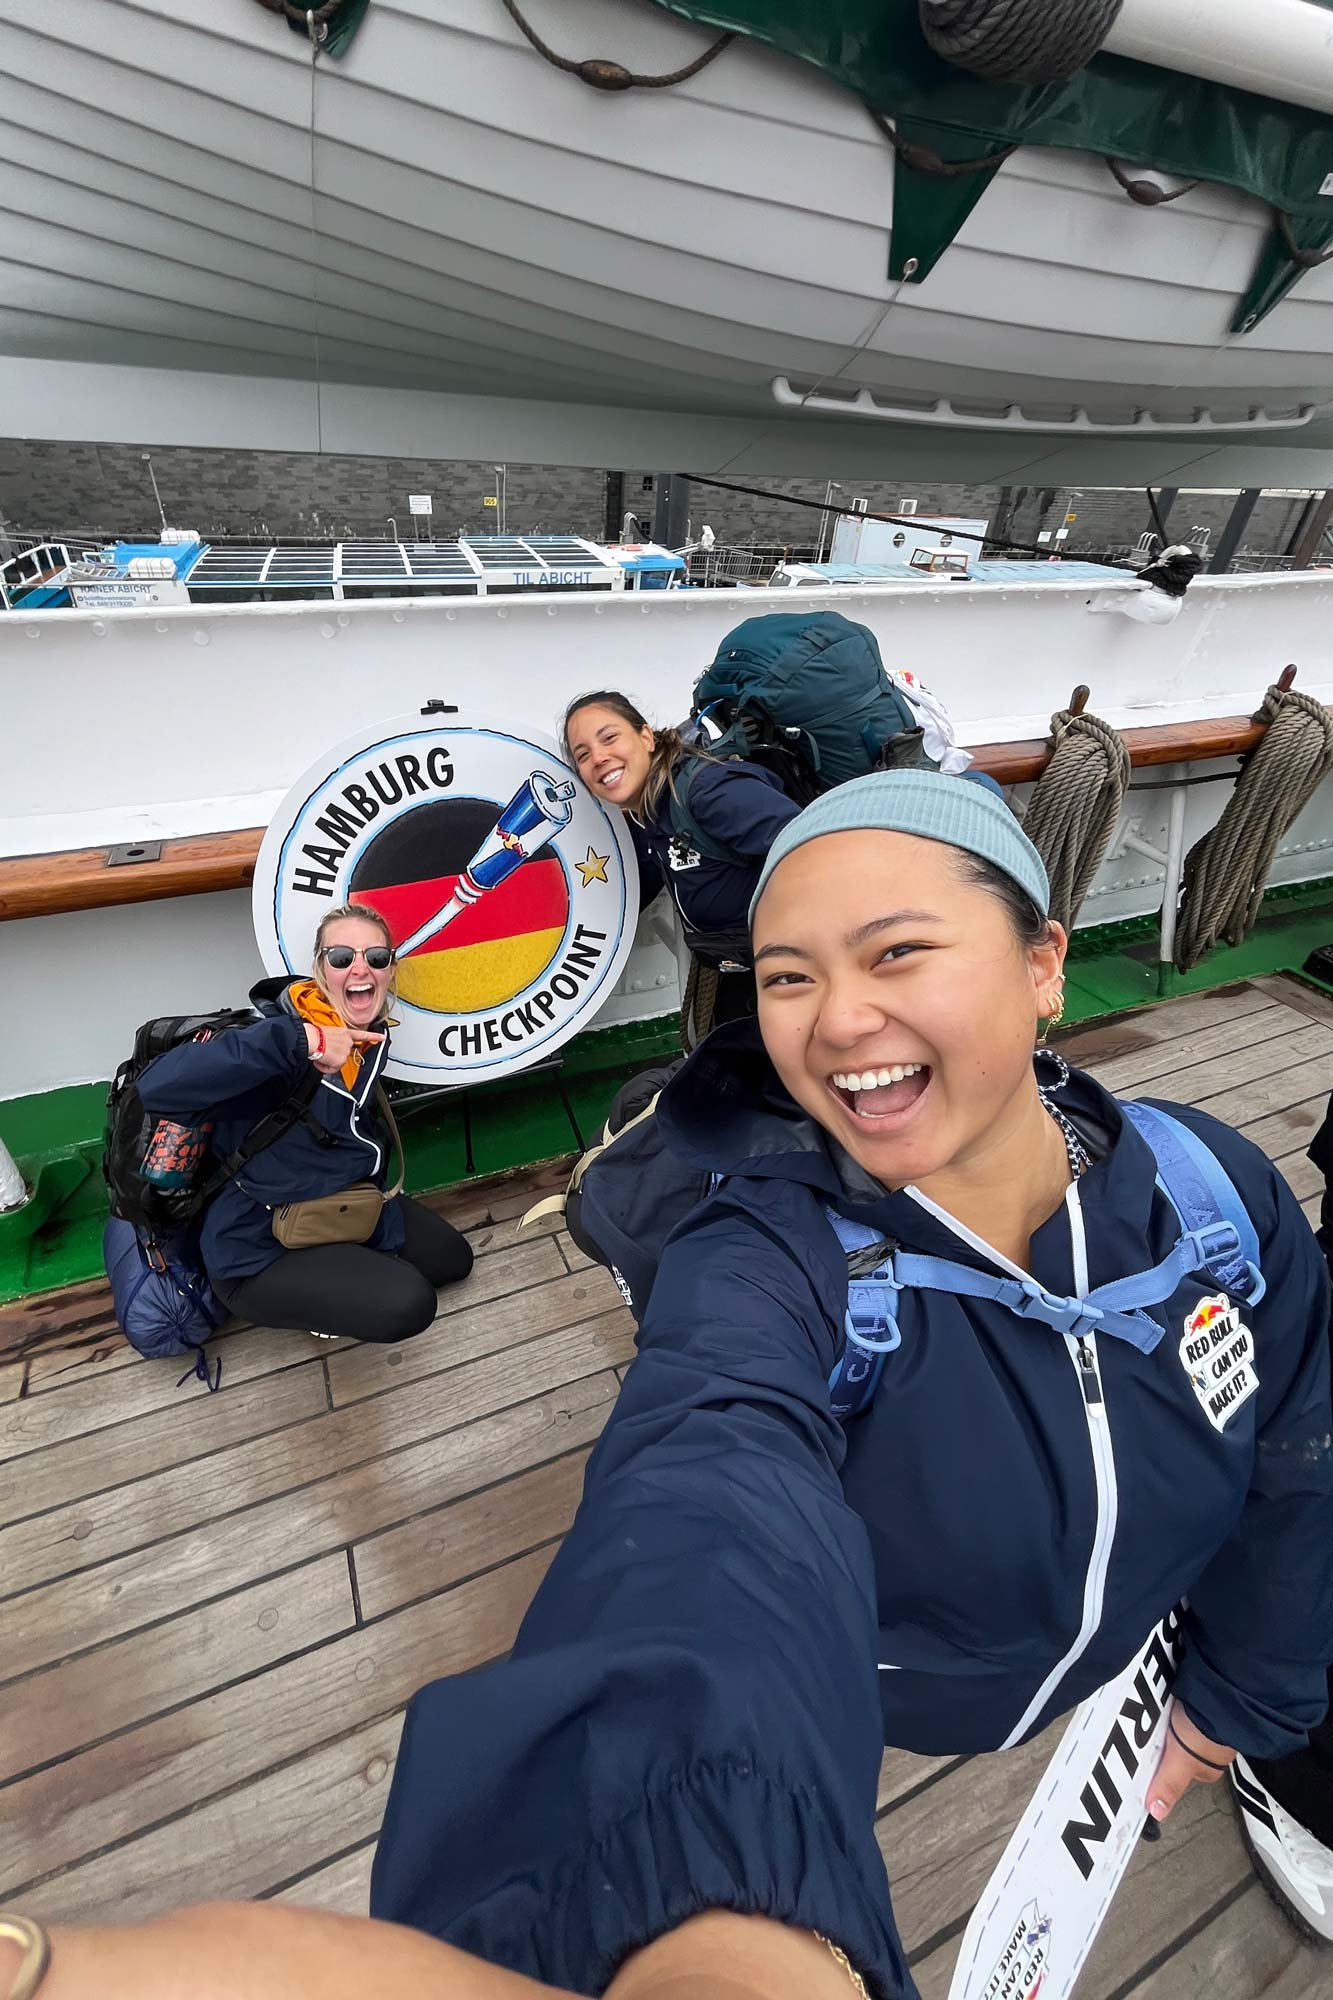 Khuyen and teammates at Hamburg checkpoint